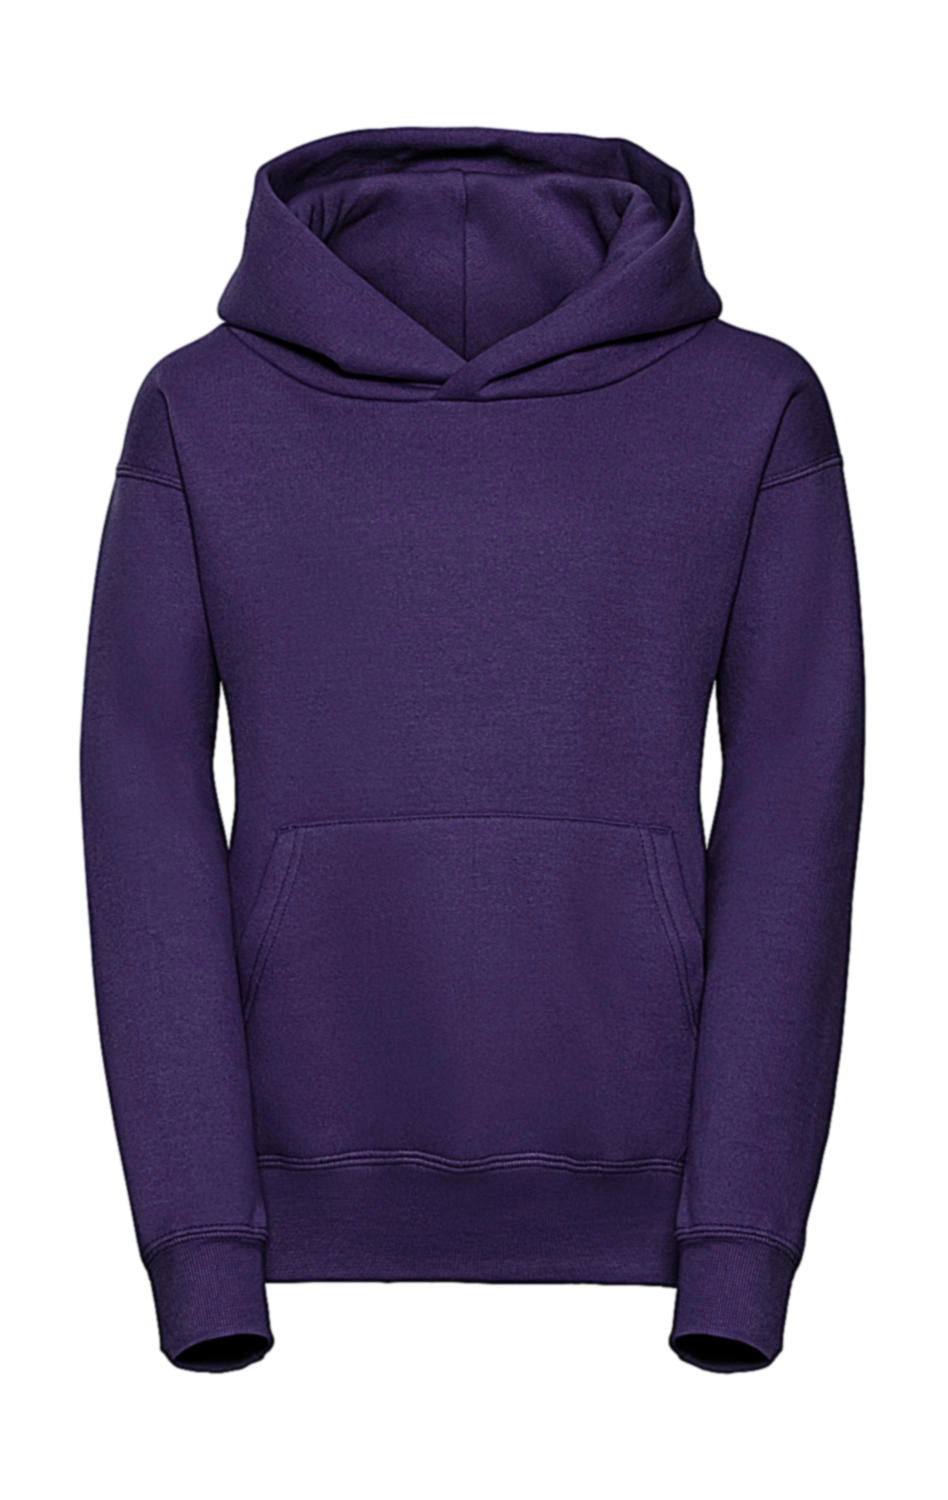 Kids` Hooded Sweat zum Besticken und Bedrucken in der Farbe Purple mit Ihren Logo, Schriftzug oder Motiv.